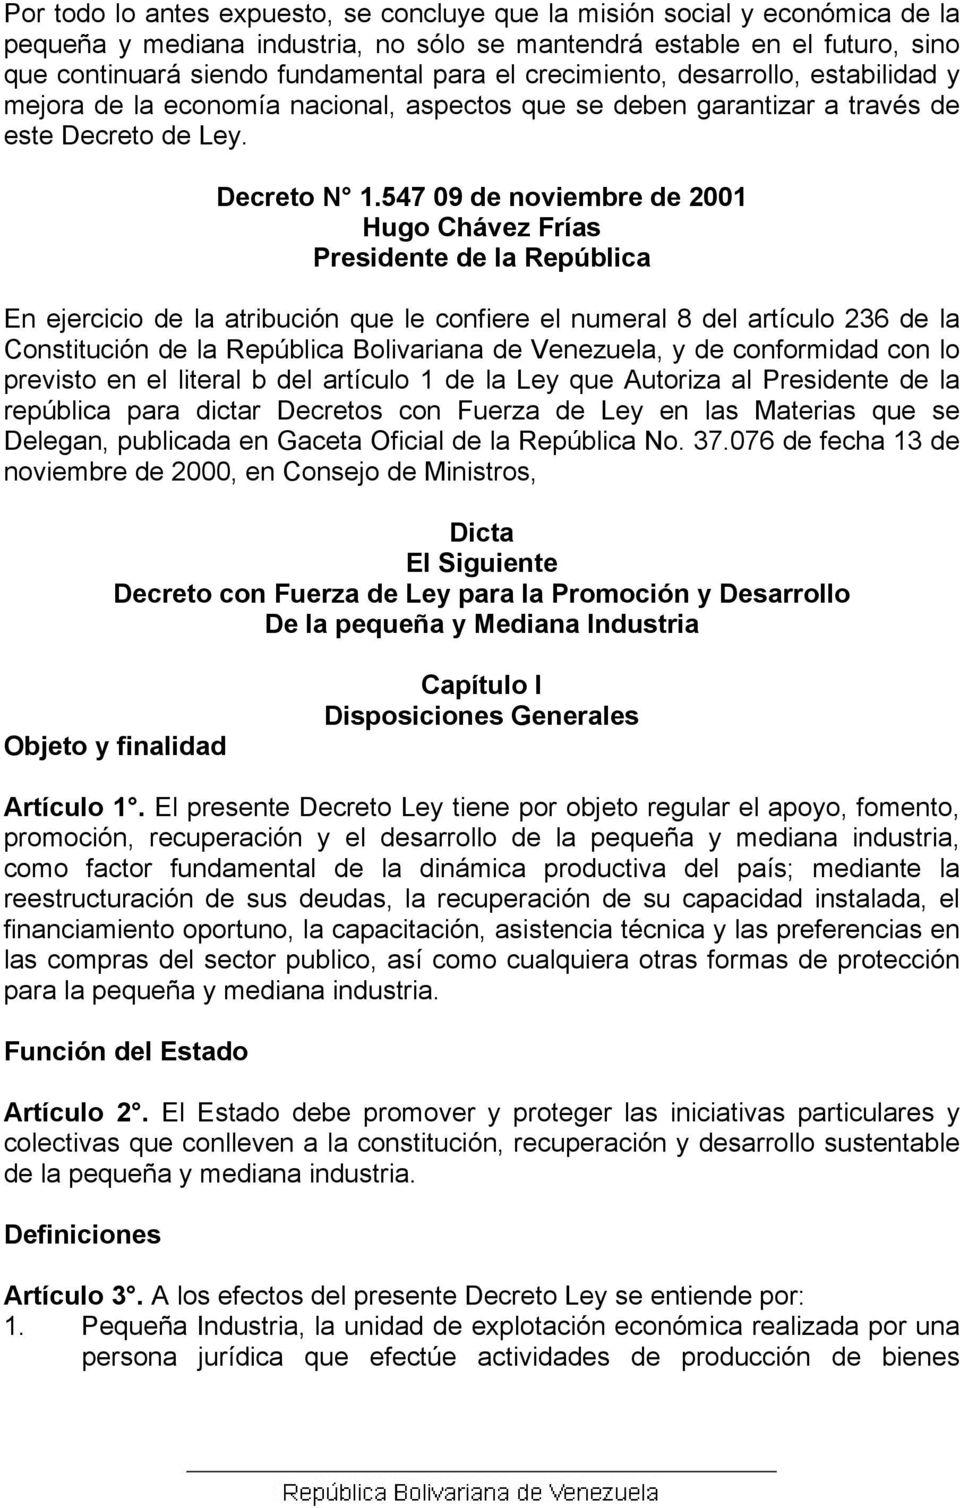 547 09 de noviembre de 2001 Hugo Chávez Frías Presidente de la República En ejercicio de la atribución que le confiere el numeral 8 del artículo 236 de la Constitución de la República Bolivariana de